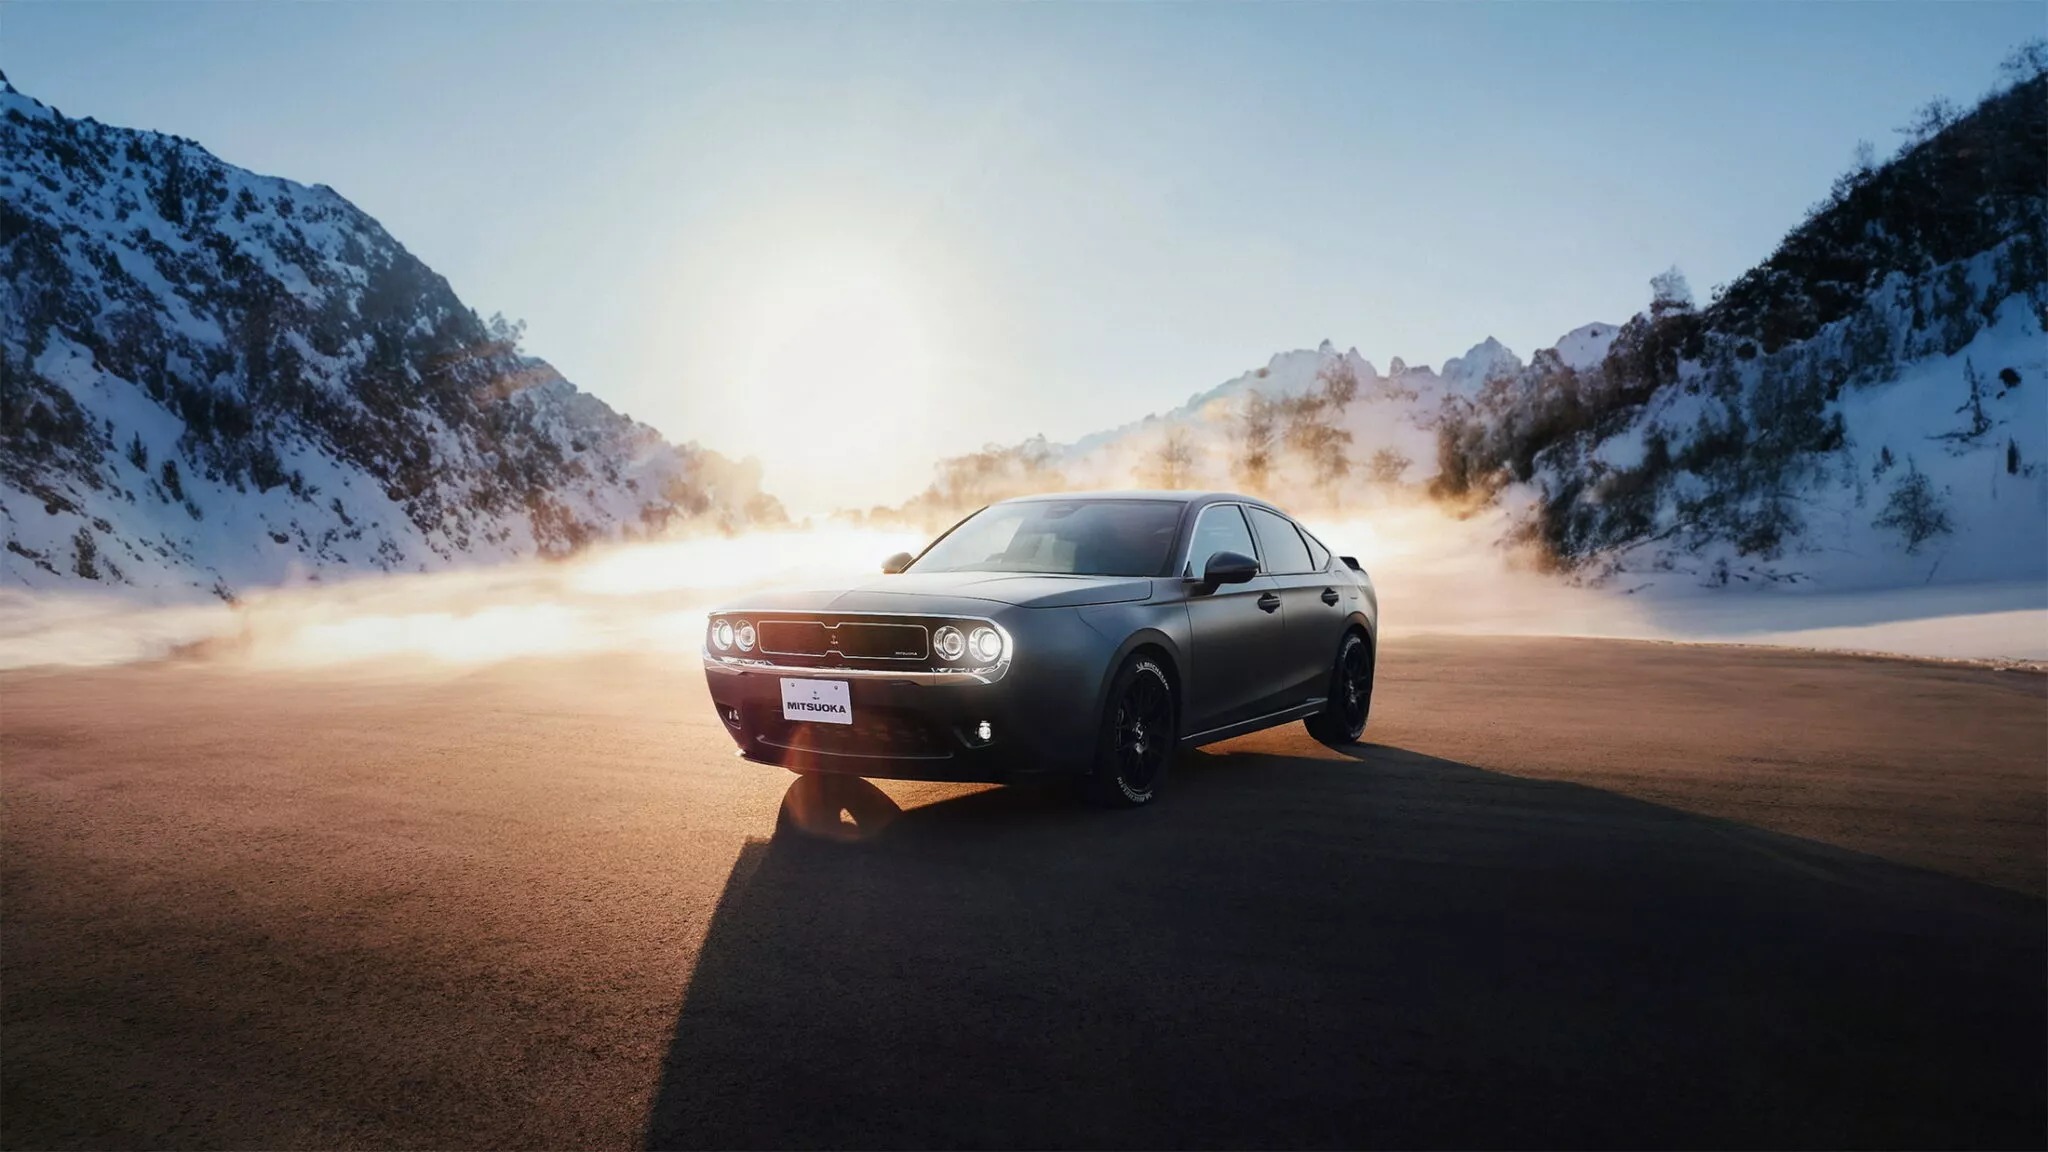 Dân chơi đổ xô đặt hàng bản độ Civic thành xe cơ bắp Mỹ: Ngoại hình như Dodge, bán từ 2025 - ảnh 4